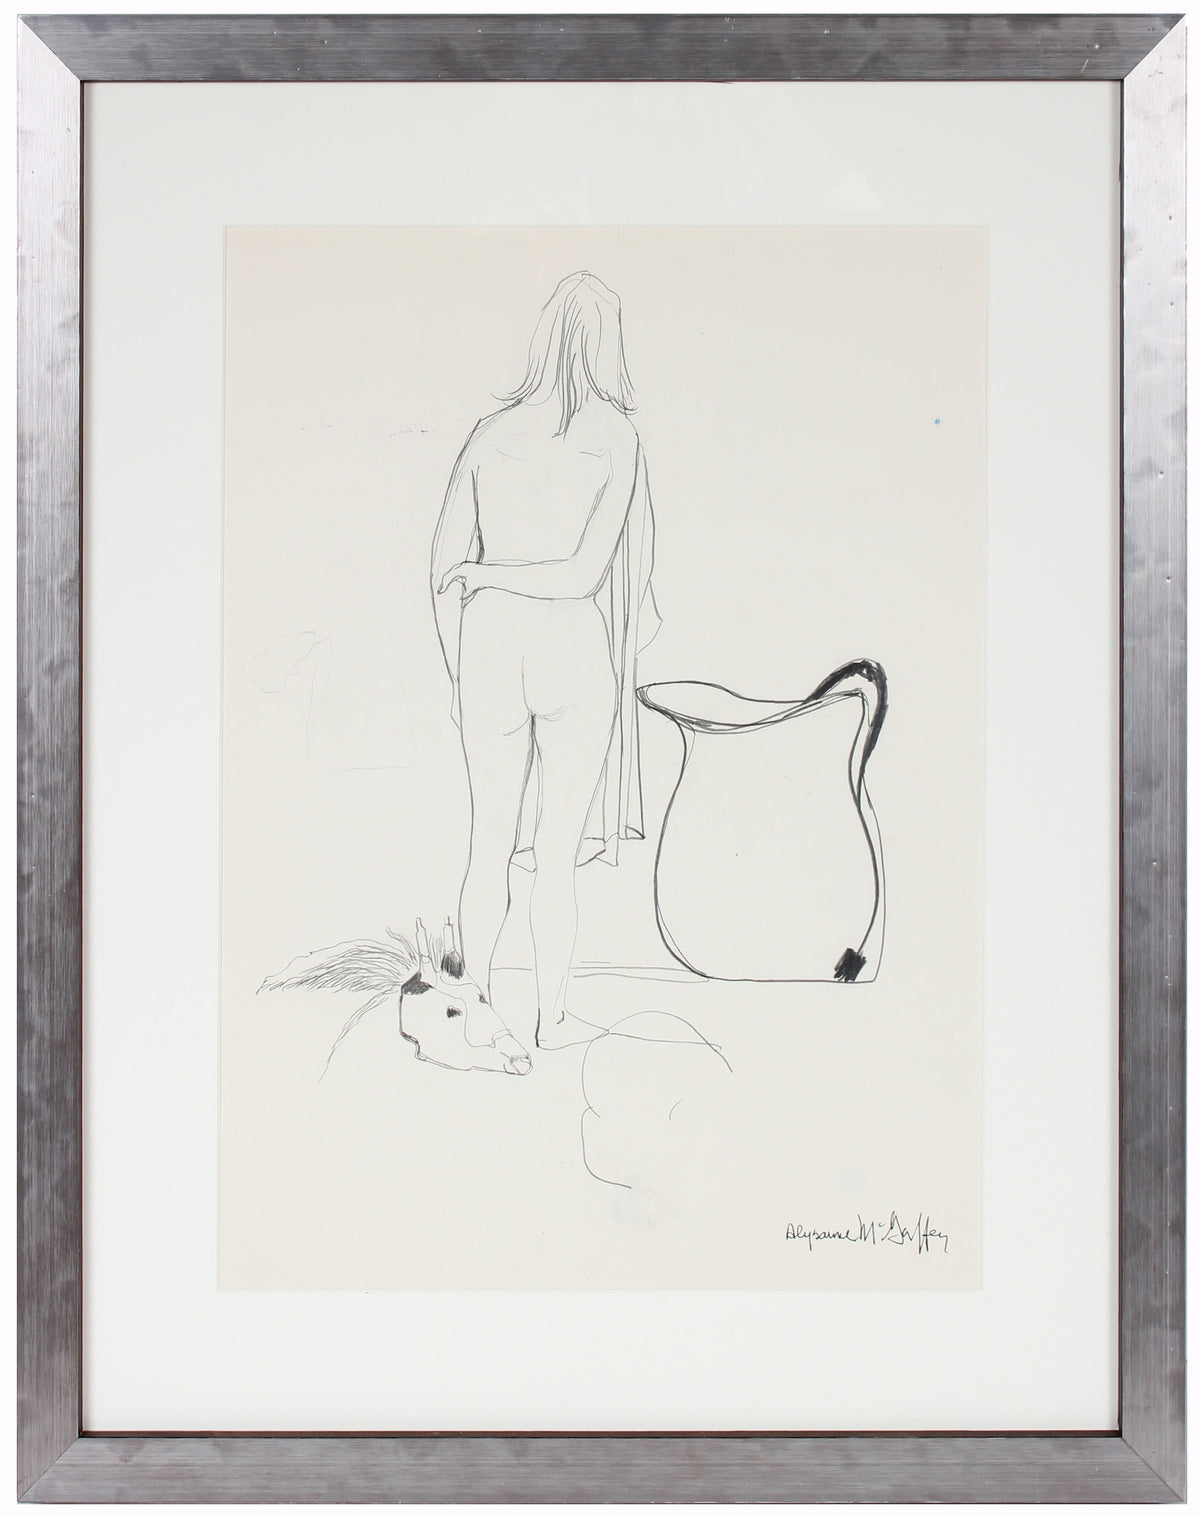 Nude Figure with Skull &lt;br&gt;1950-60s Charcoal &amp; Graphite&lt;br&gt;&lt;br&gt;#23388